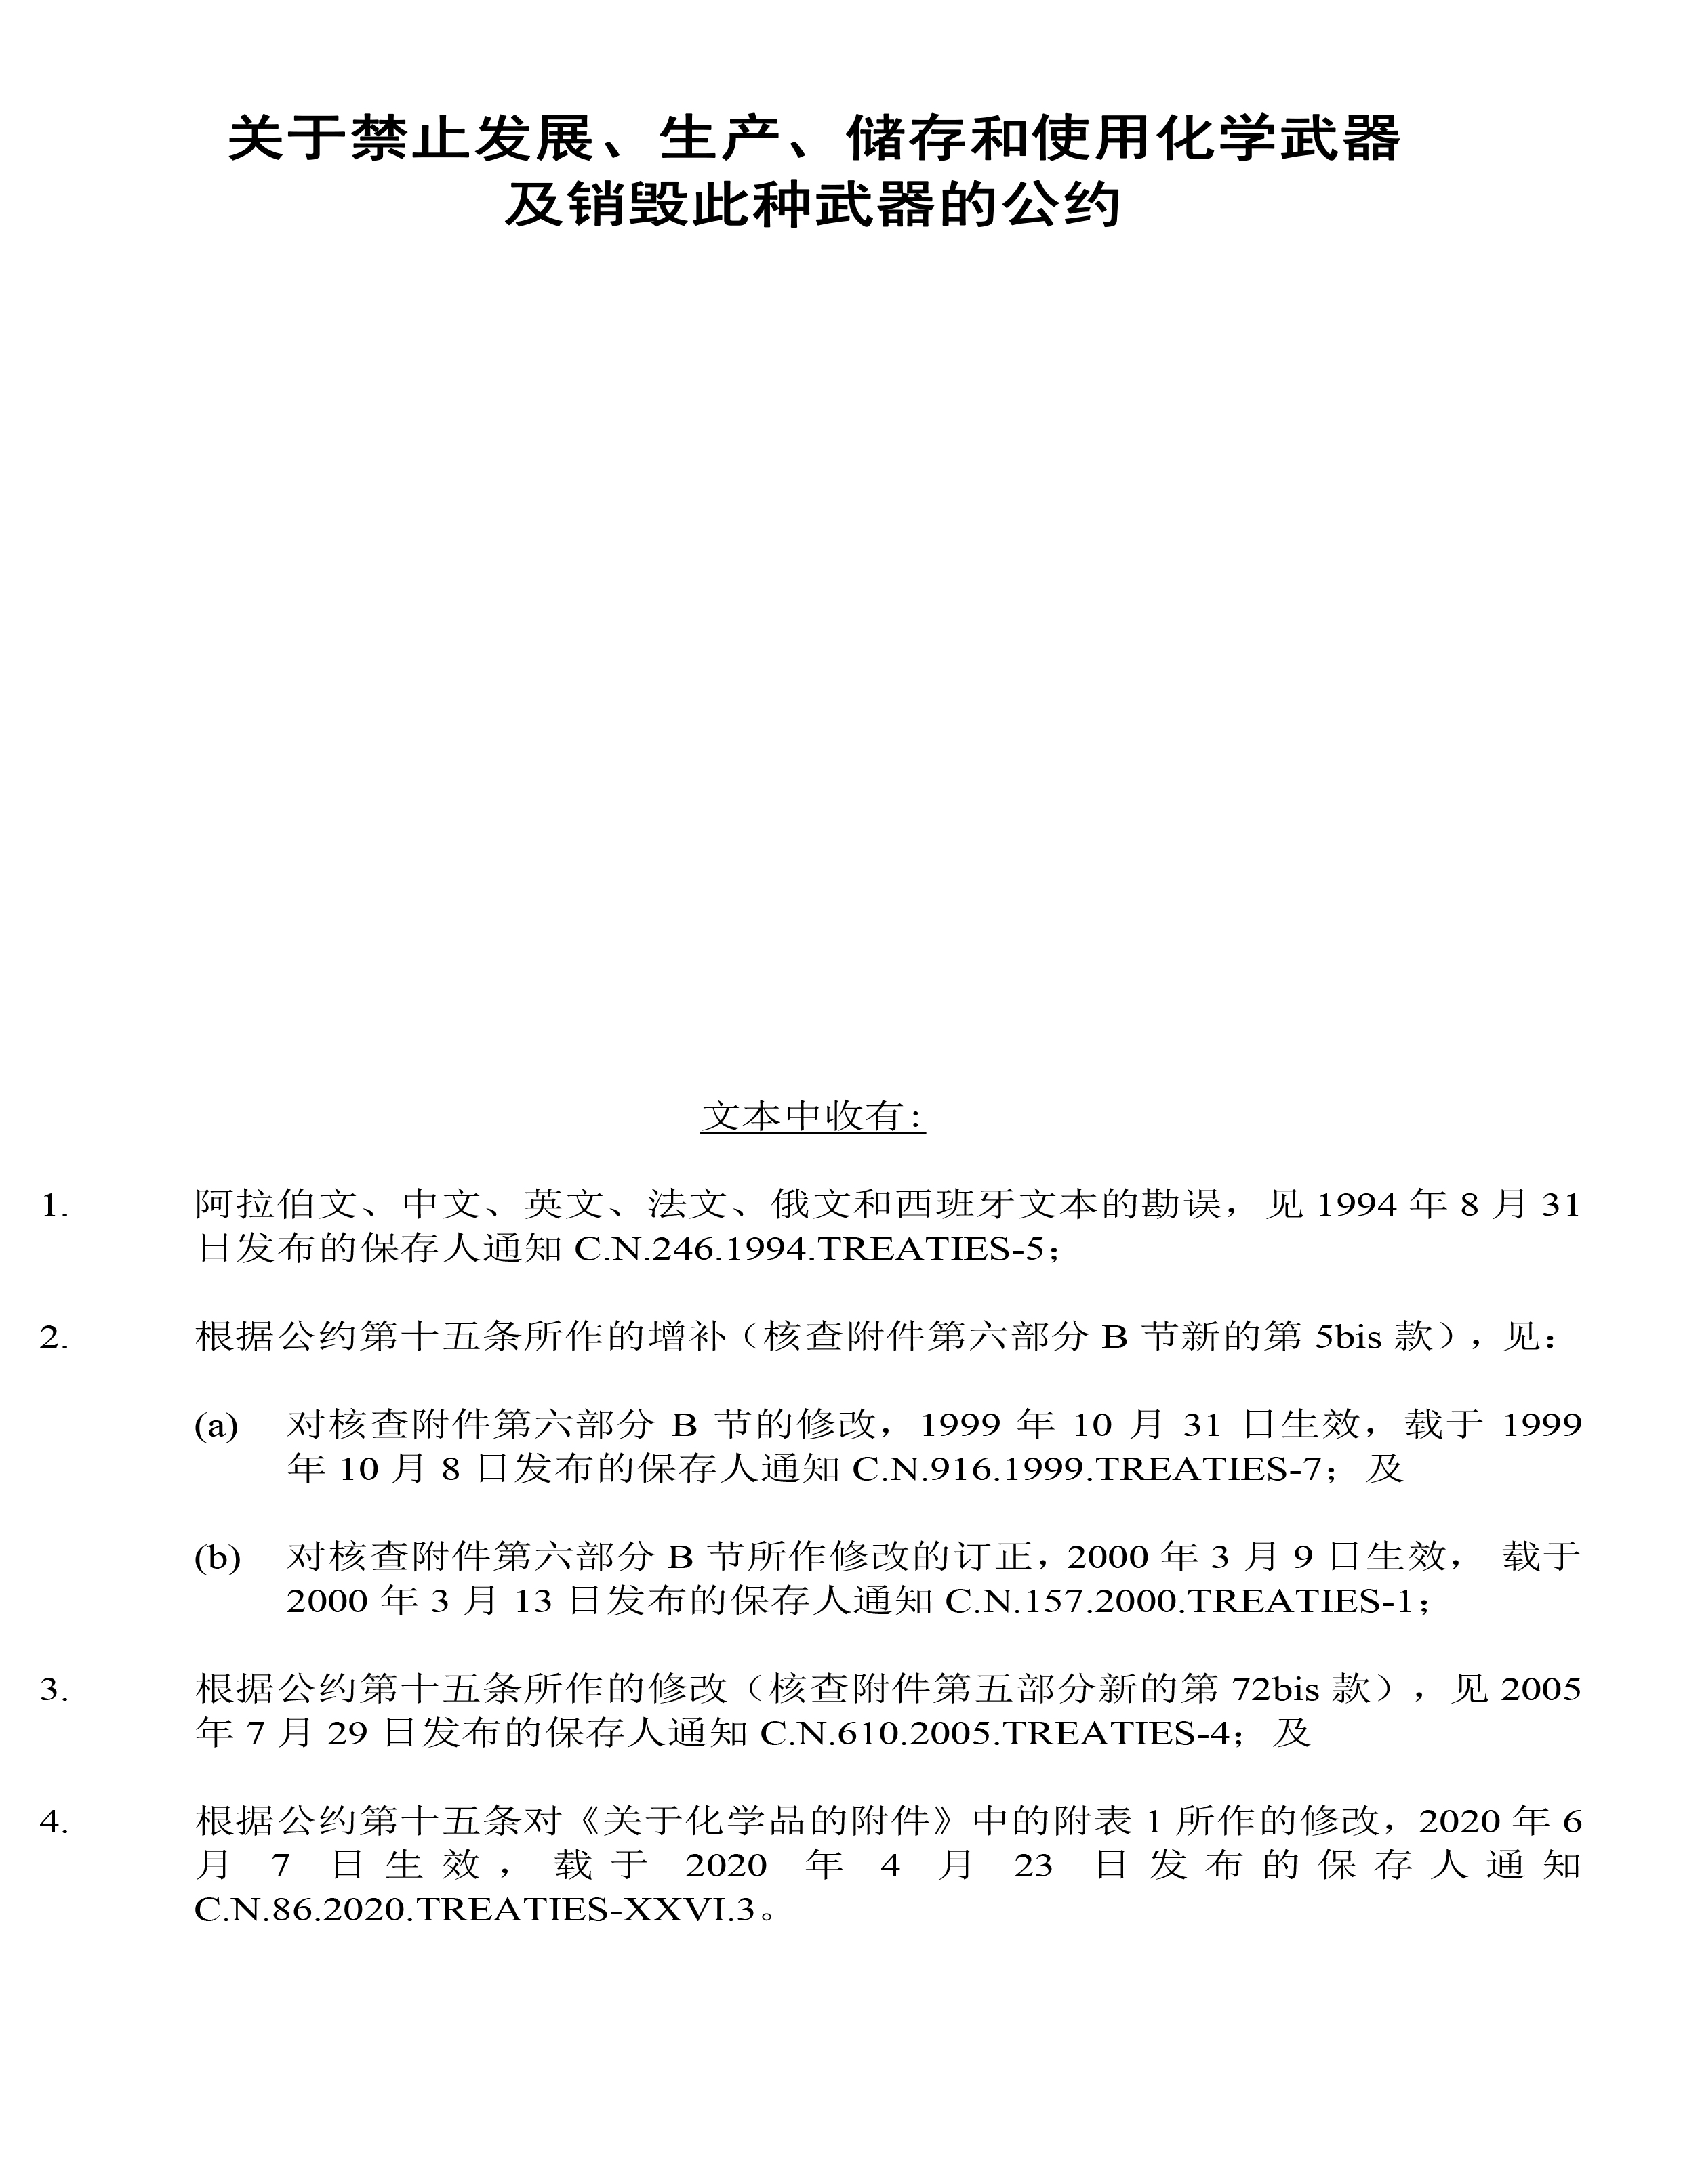 禁止化学武器公约-中文版-2.jpg